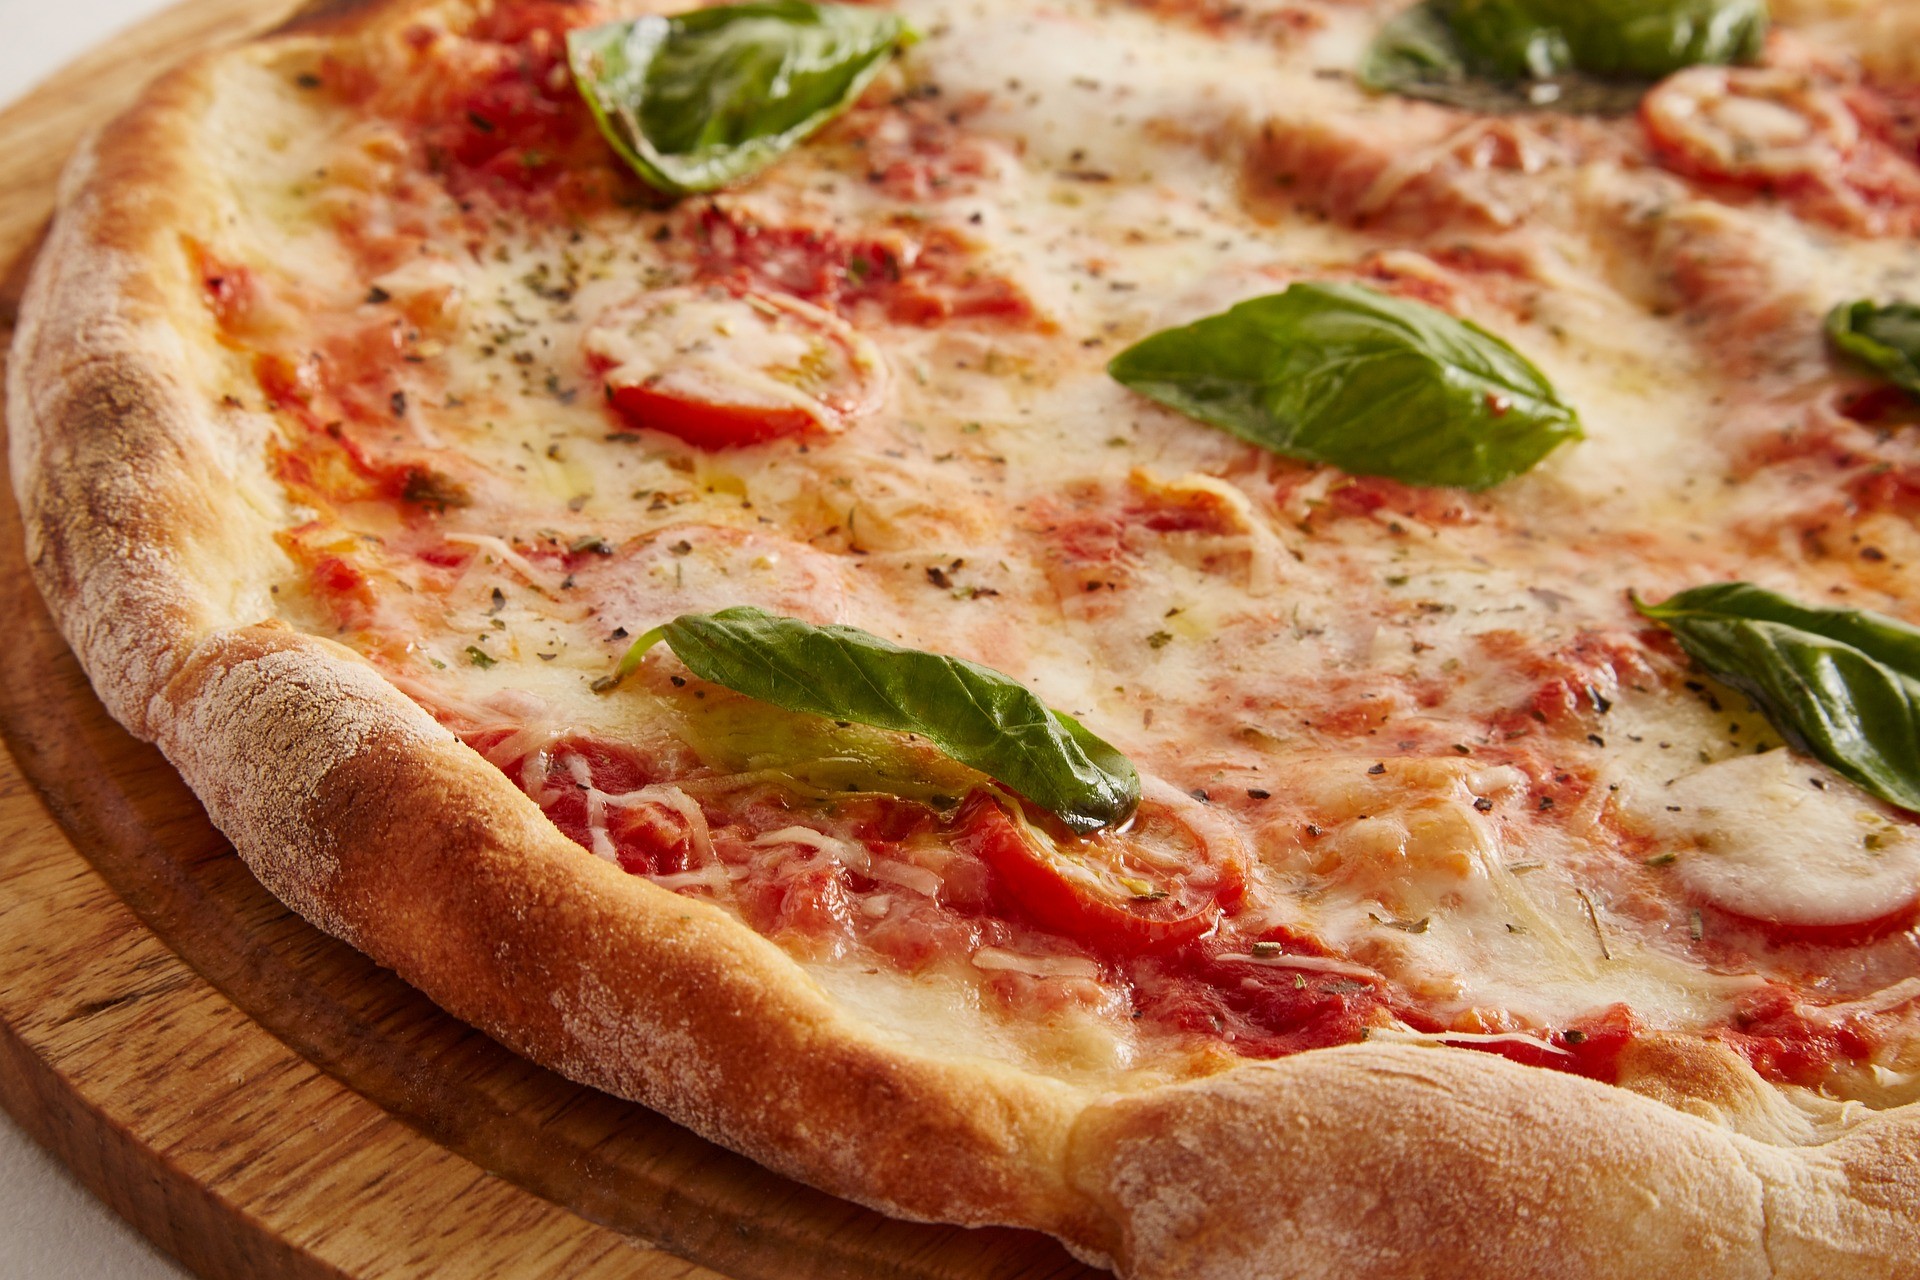 Under många år var kanadensiska Boston Pizza en favorit hos svenska utdelningsinvesterare. Den månatliga utdelningen var något som många uppskattade. Att direktavkastningen dessutom är hög var inte heller något som svenska investerare hade något emot. När Covid-19 härjade som värst ställdes utdelningen in, och aktiekursen föll kraftigt. I denna artikel tittar vi på en investerare som tjänade 200 MUSD på pizza – på mindre än ett kvartal.